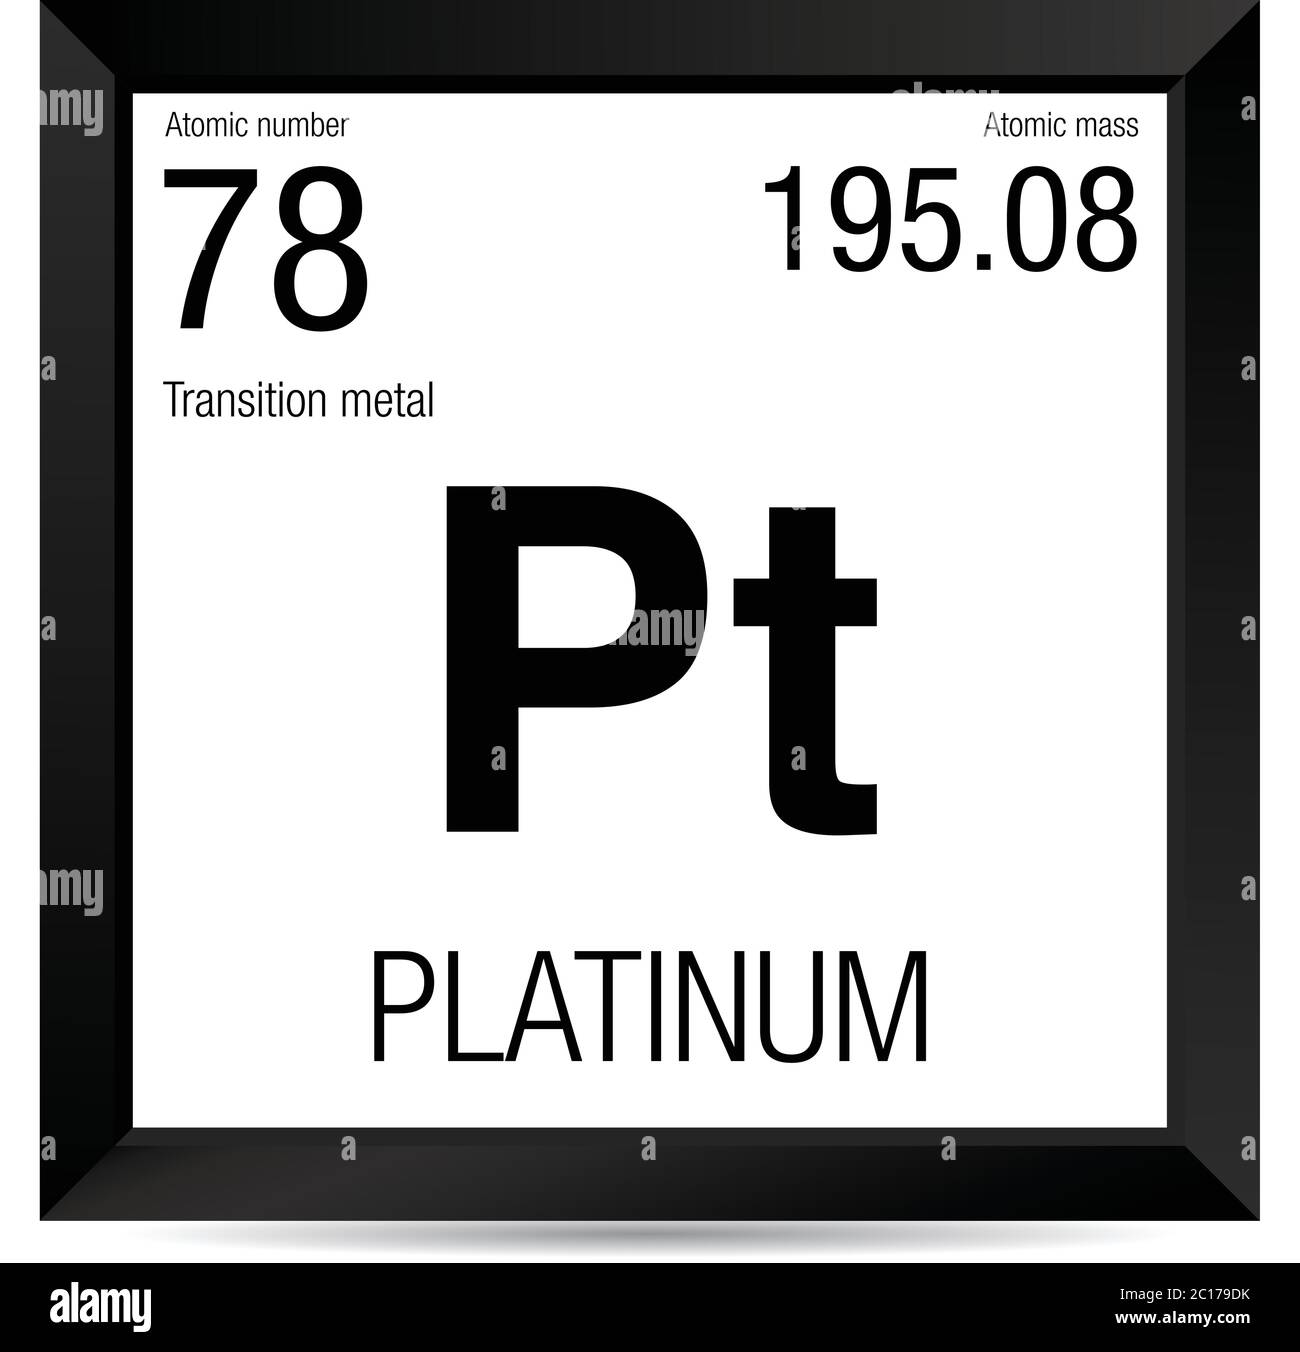 Platin-Symbol. Elementnummer 78 des Periodensystems der Elemente - Chemie -  Schwarzer quadratischer Rahmen mit weißem Hintergrund Stock-Vektorgrafik -  Alamy